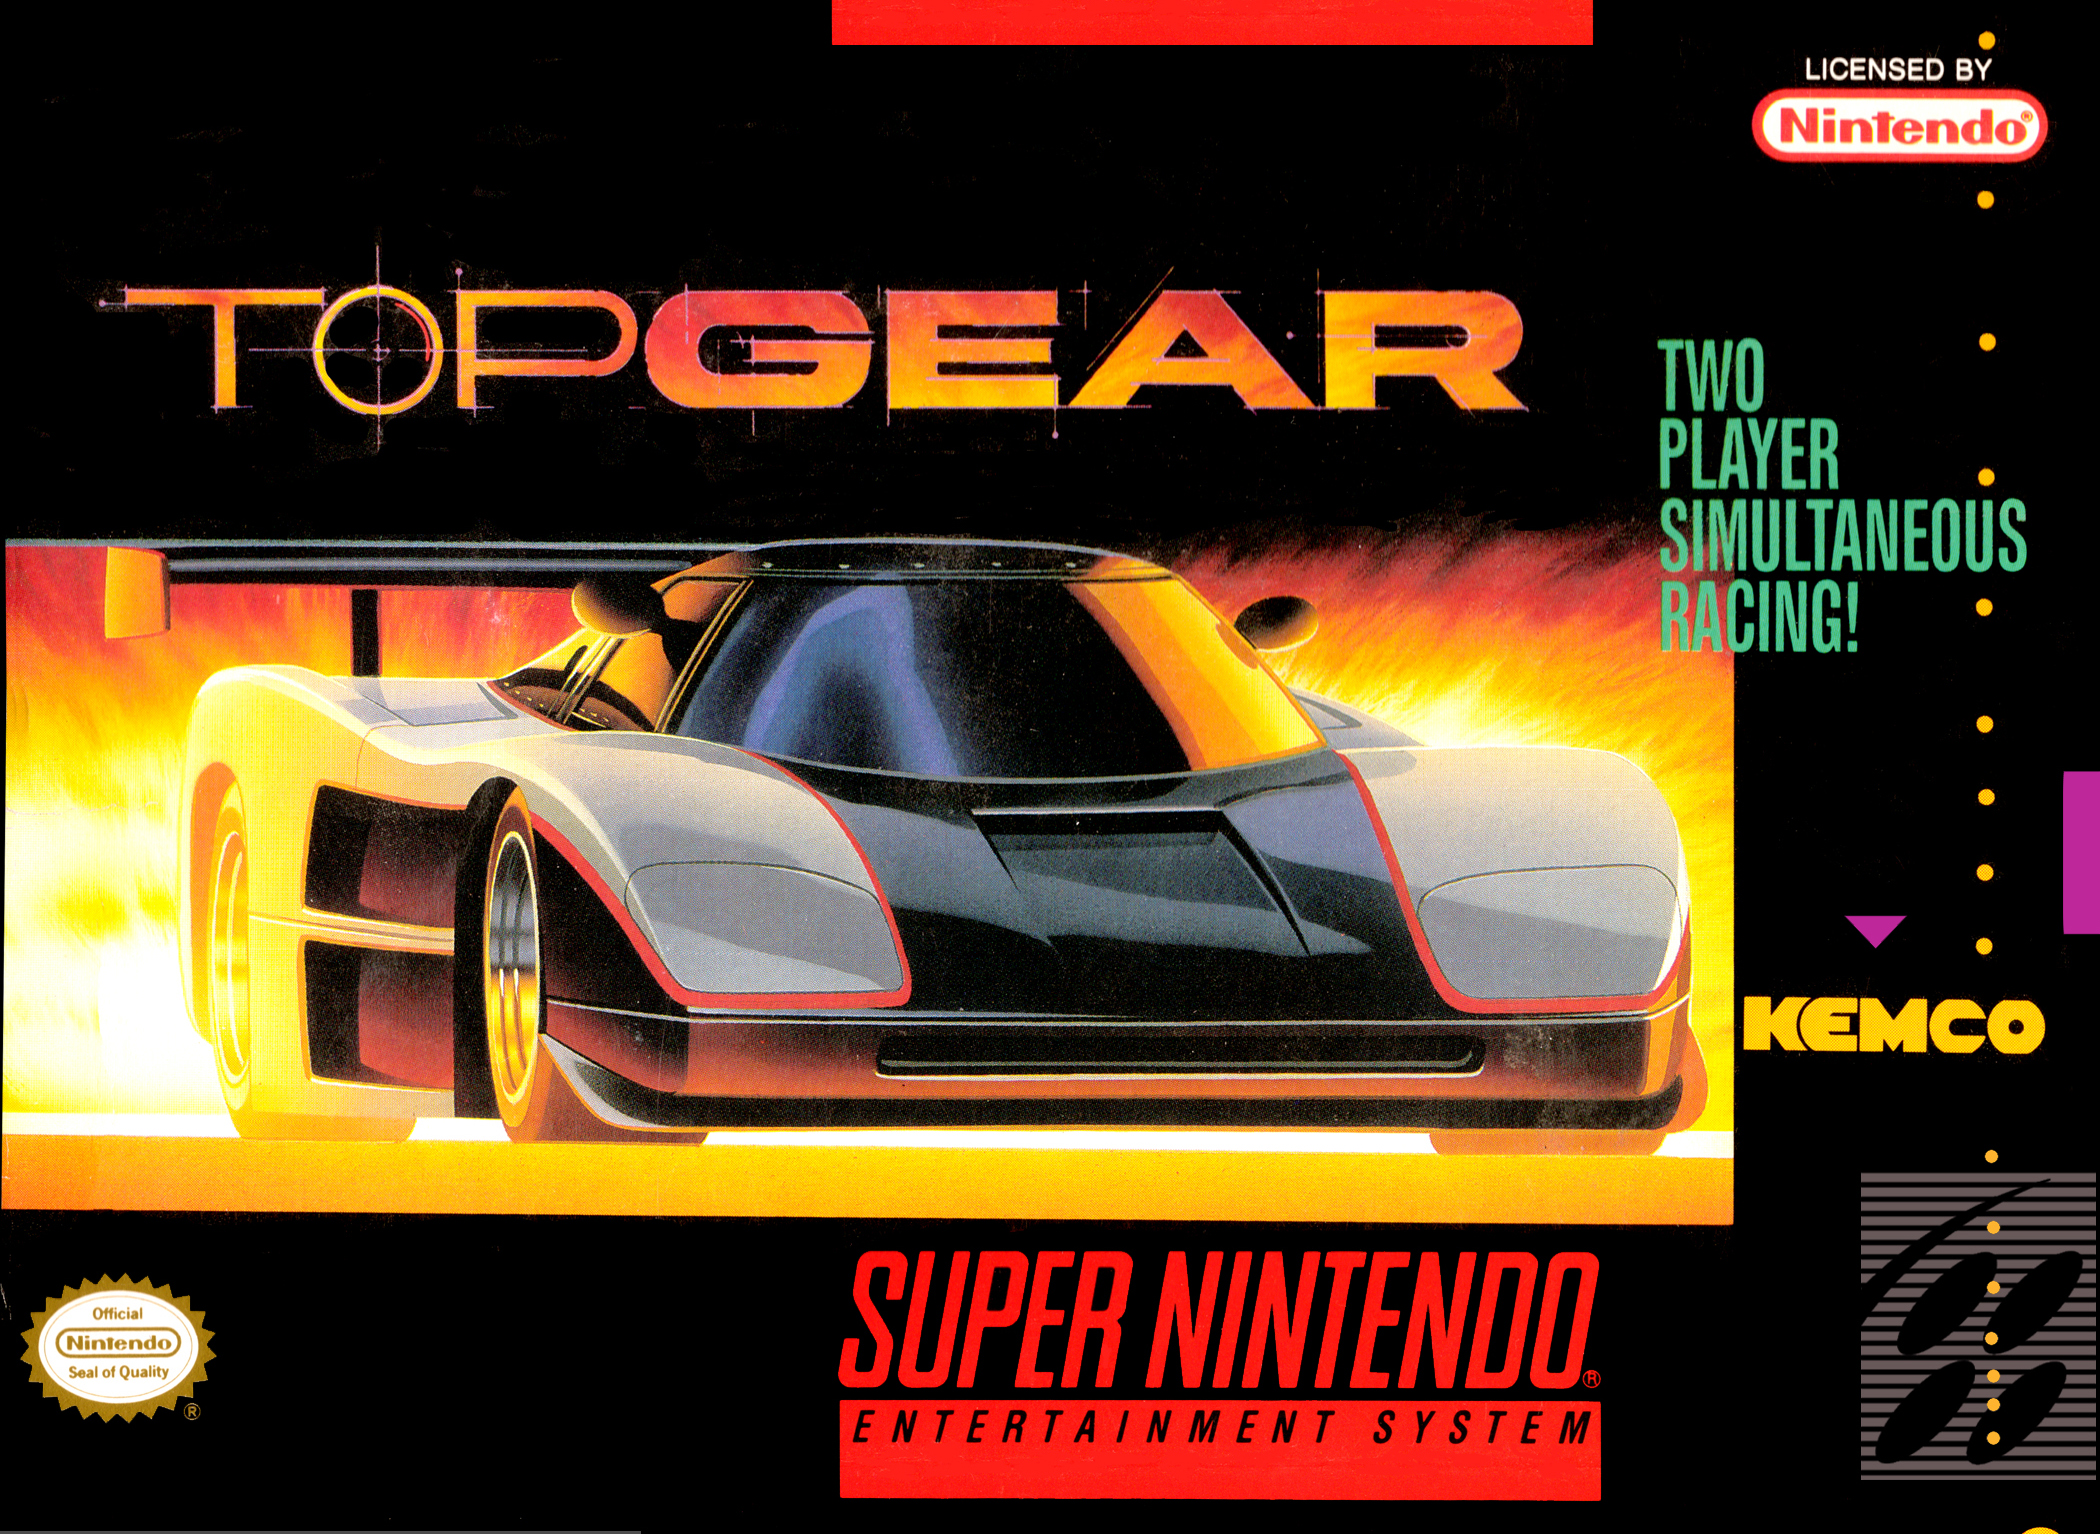 Cartucho Fita Top Gear 1 Para Super Nintendo Snes